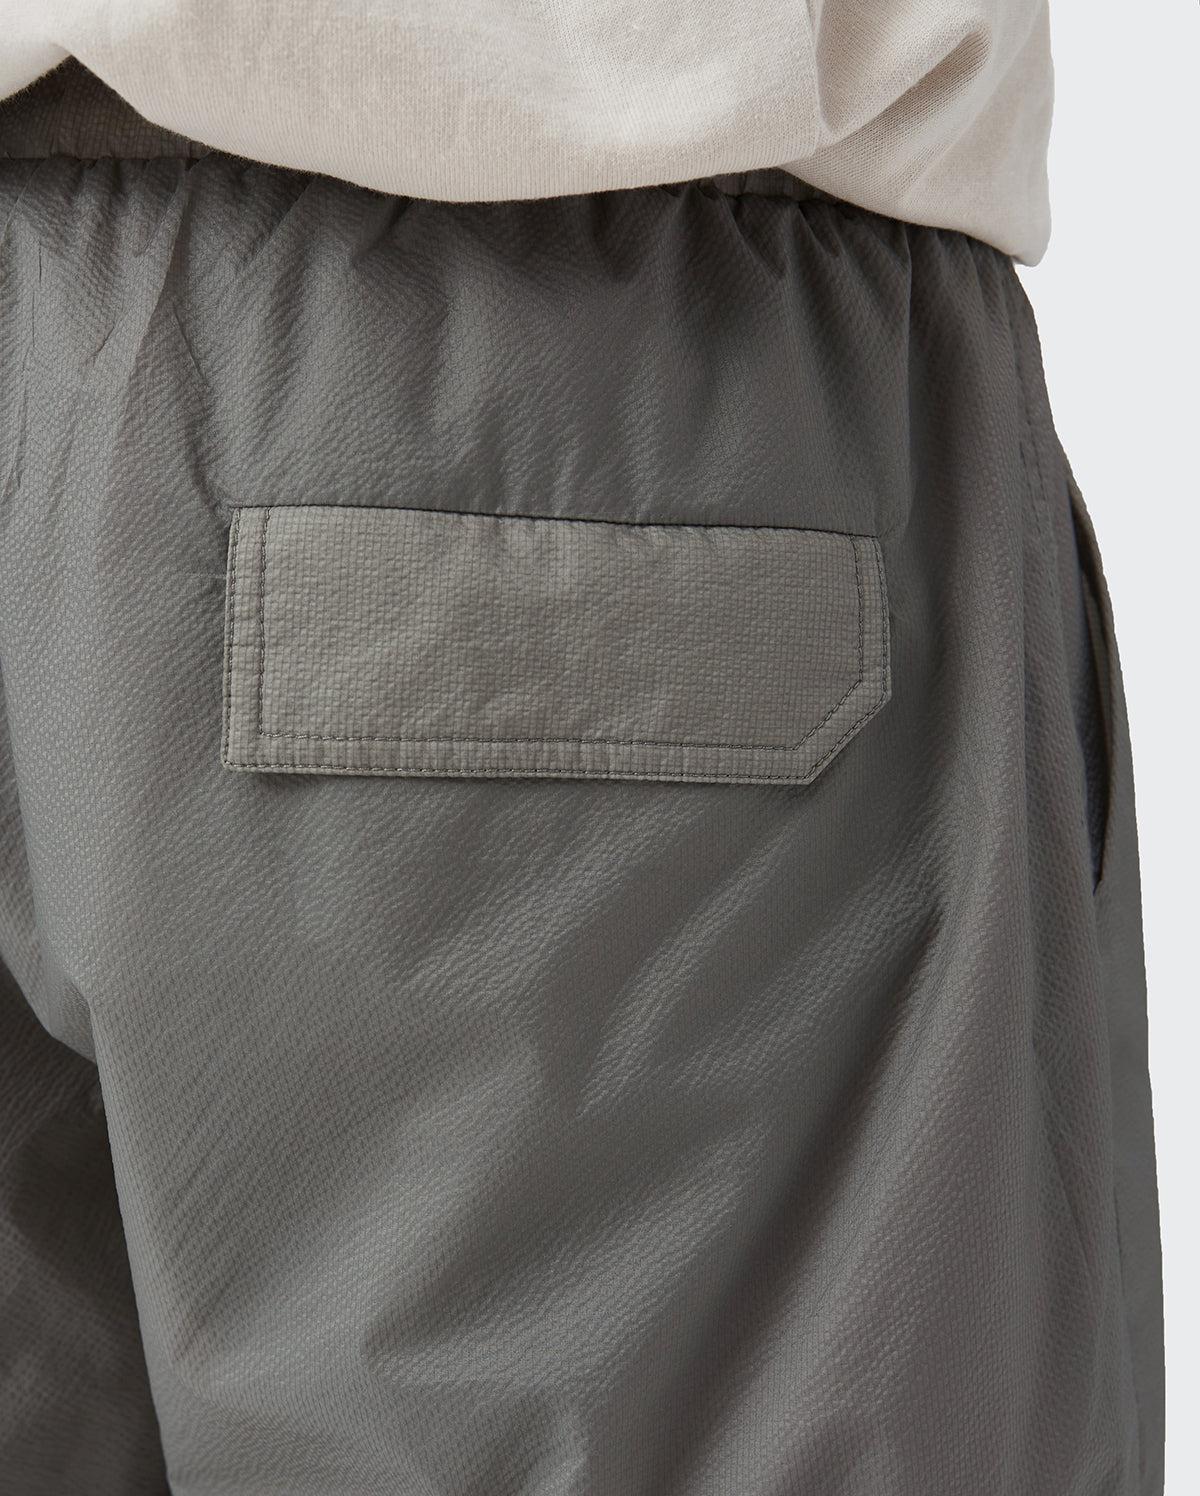 Concrete Nylon Short-Shorts-MAUV STUDIO-STREETWEAR-Y2K-CLOTHING